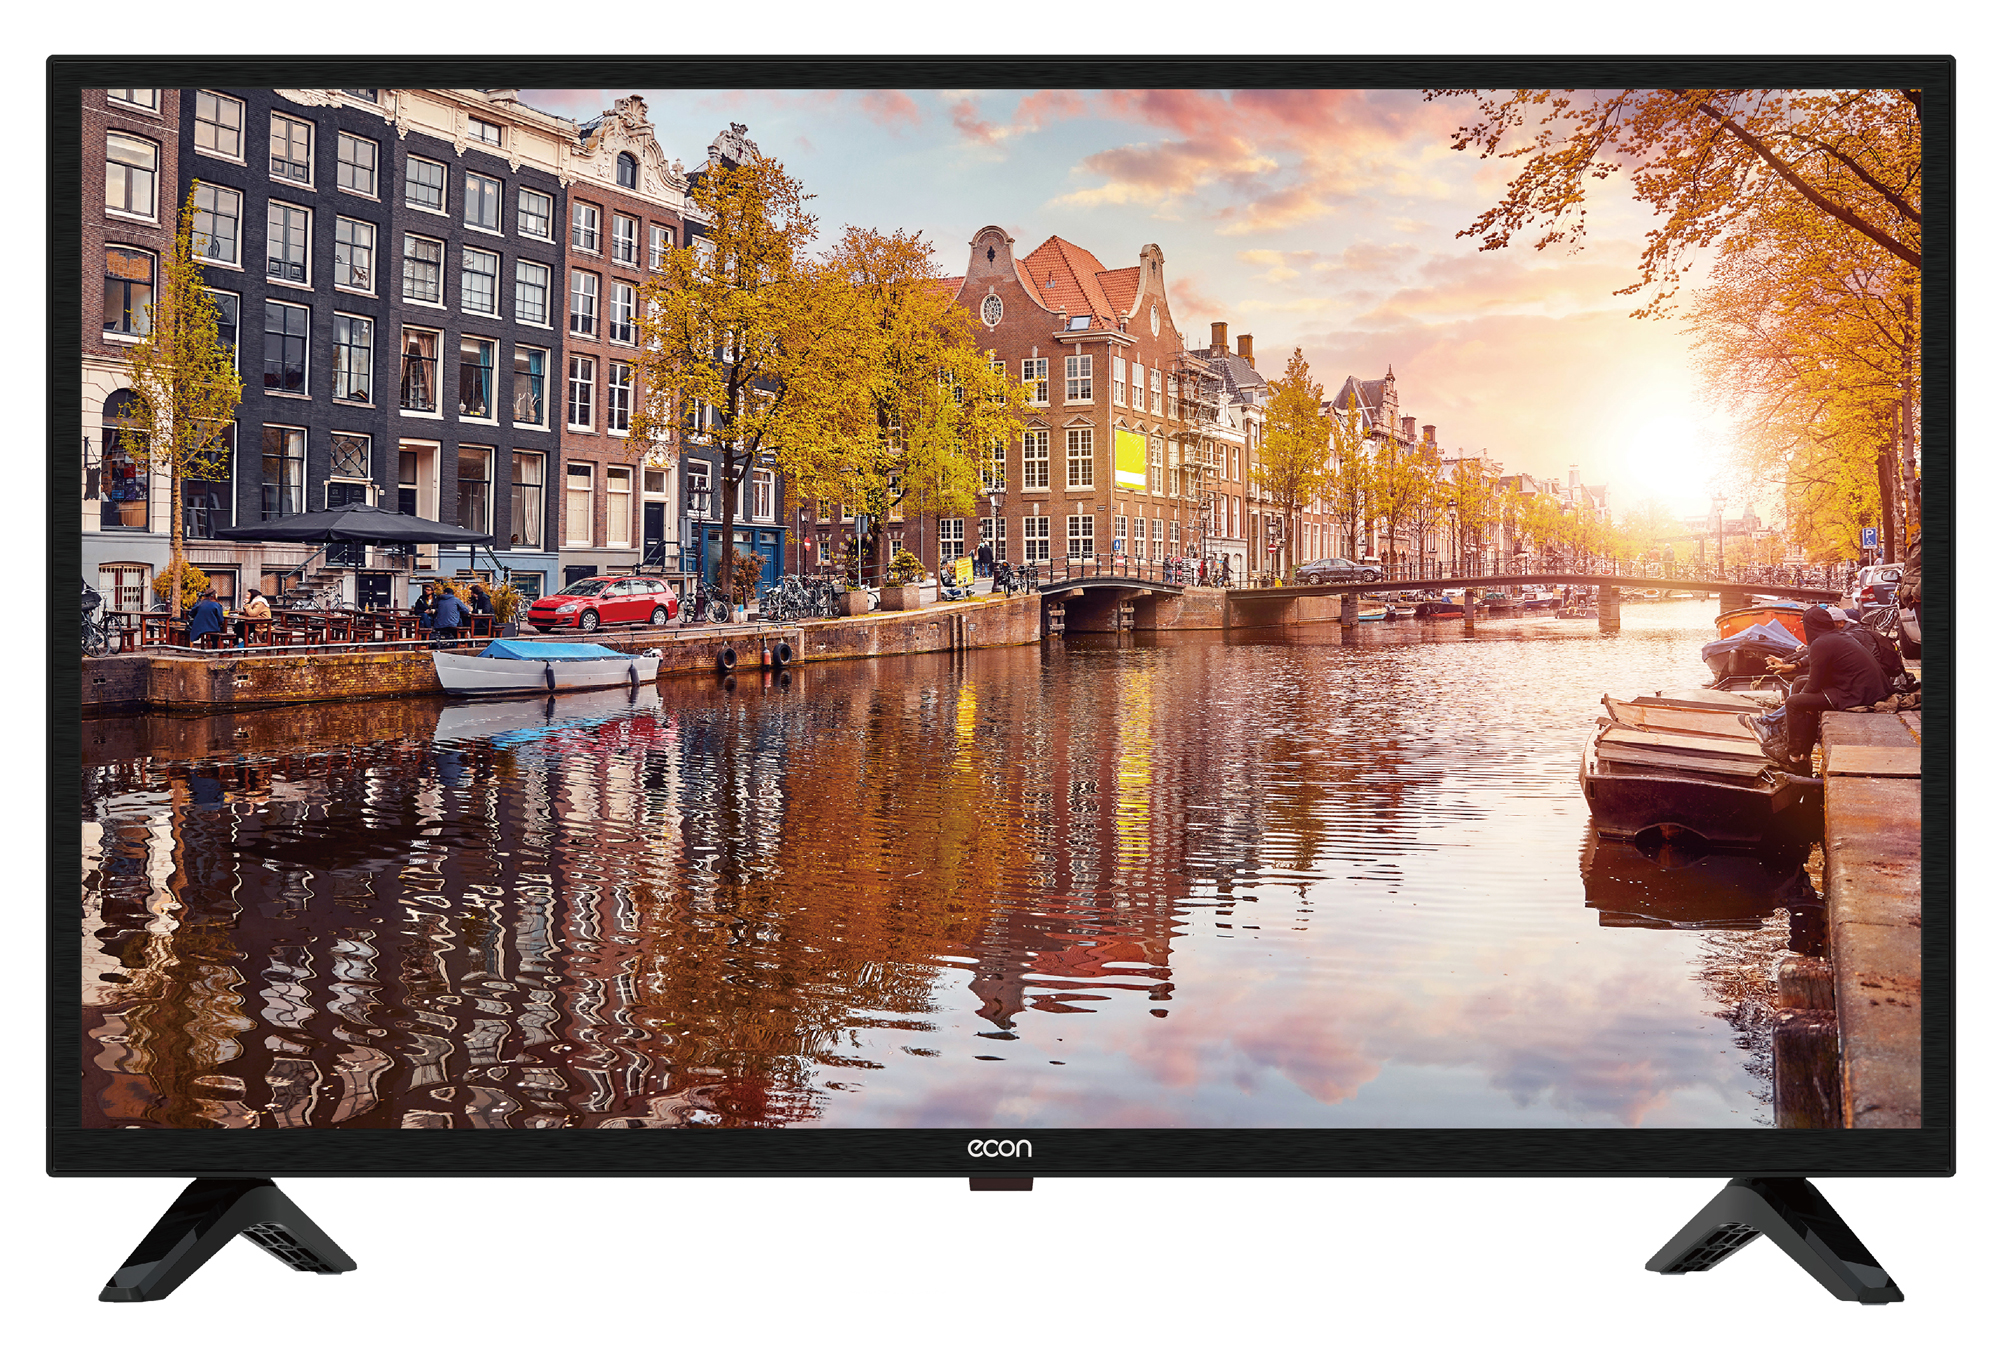 Картинка Телевизор ECON EX-32HT013B по разумной цене купить в интернет магазине mall.su